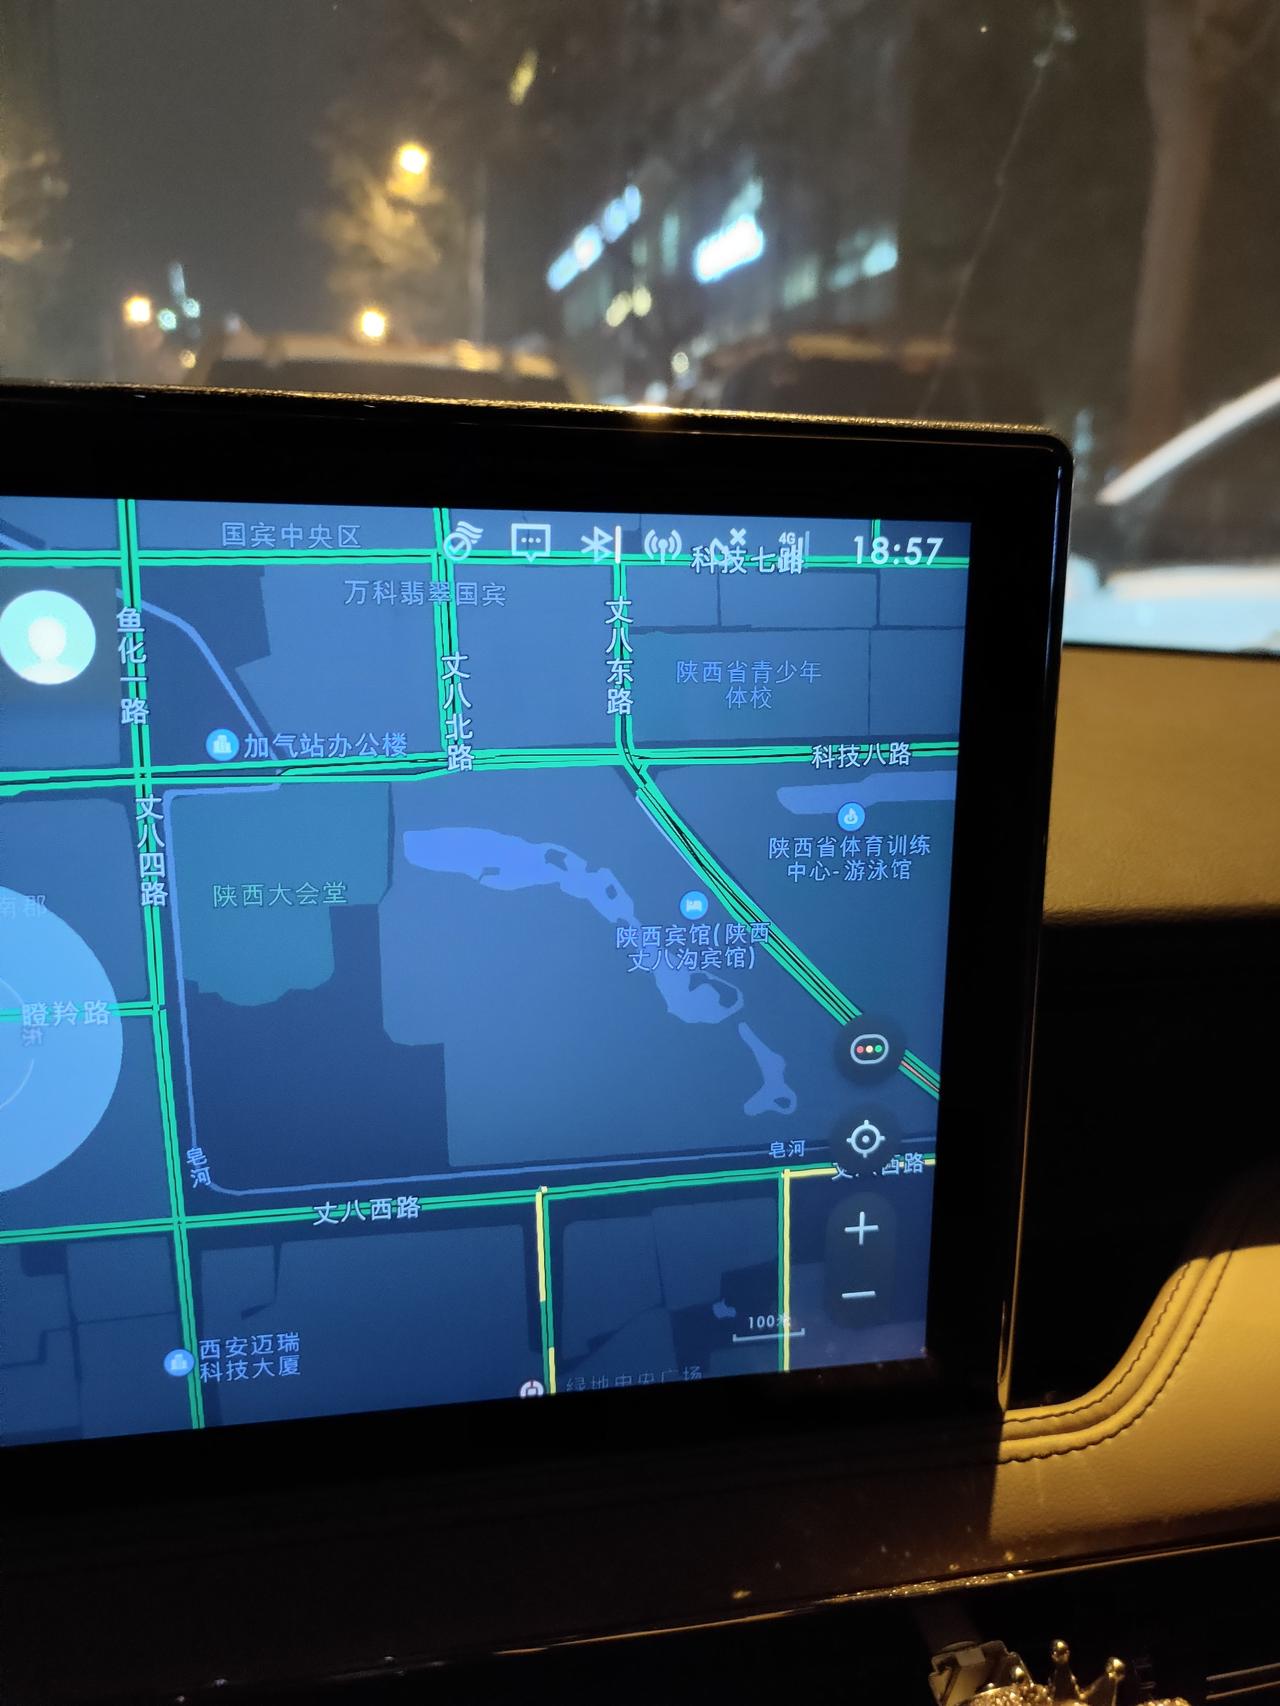 林肯冒险家 GPS图标是x，地图定位没有问题 但是百度地图导航功能就废了，有车友遇到相同问题吗？